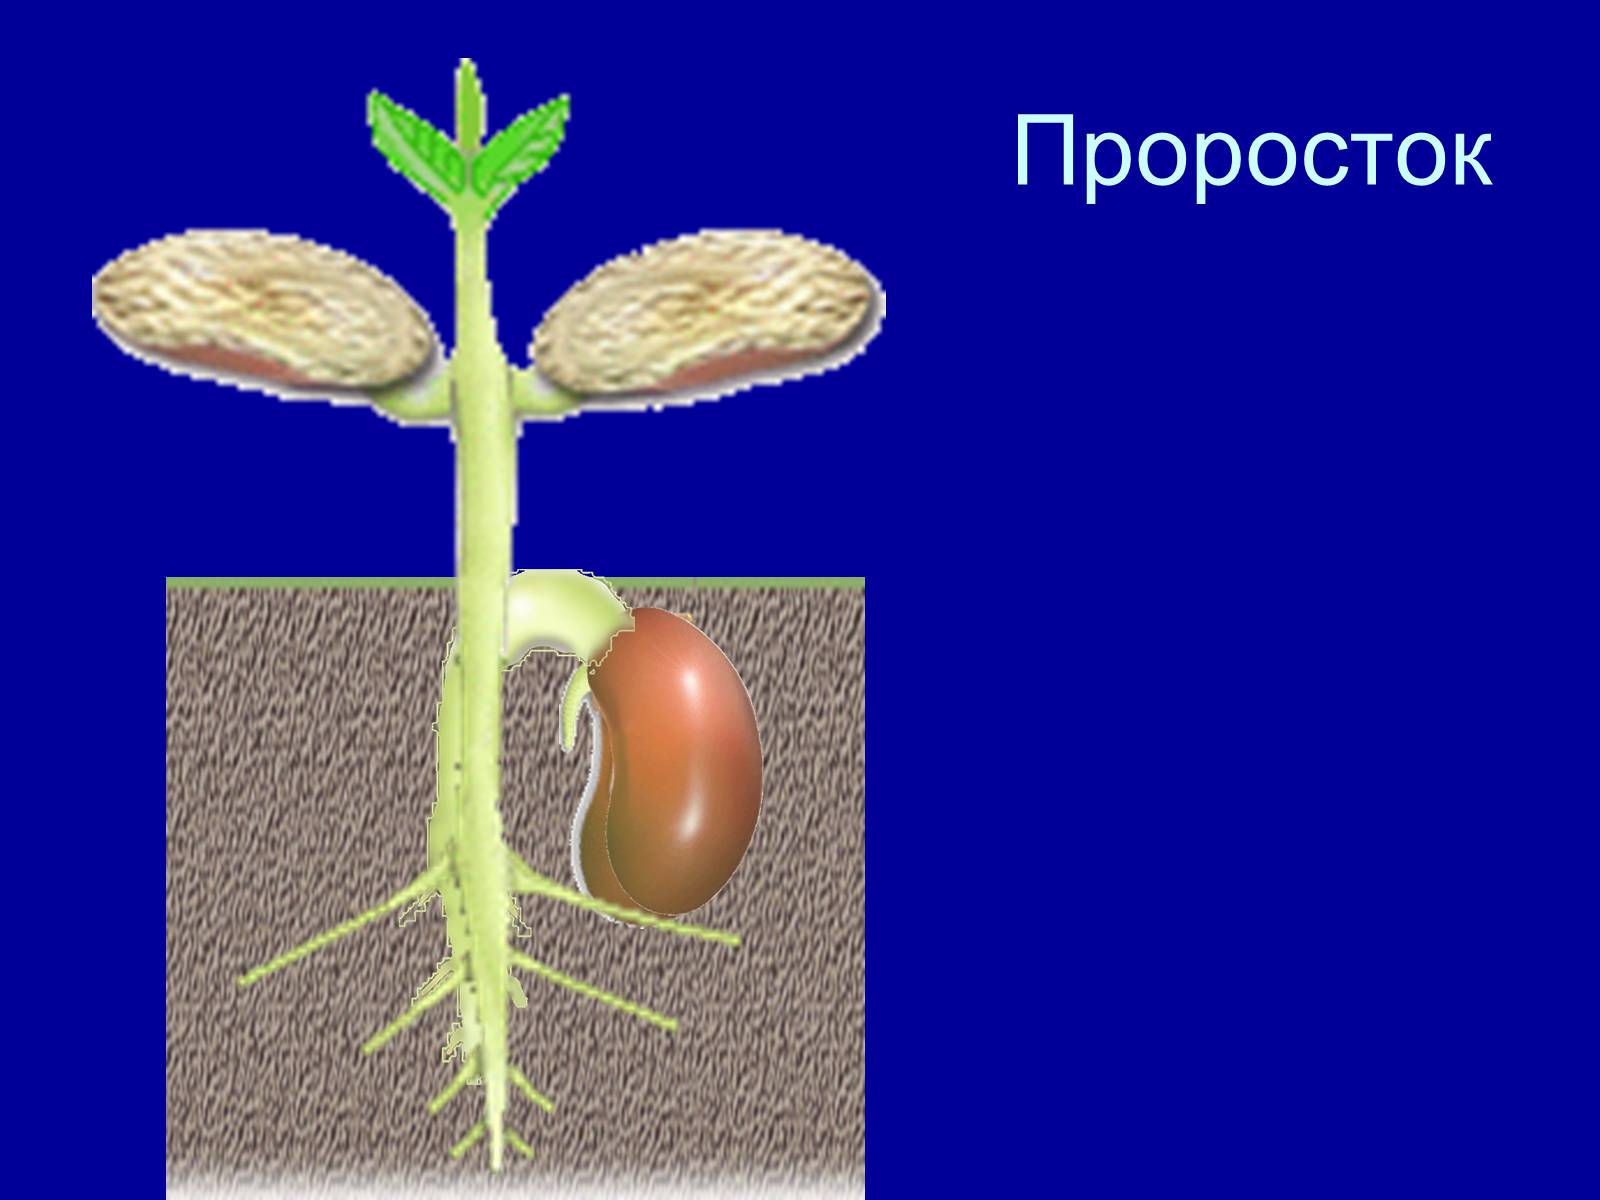 Биология условия прорастания семян